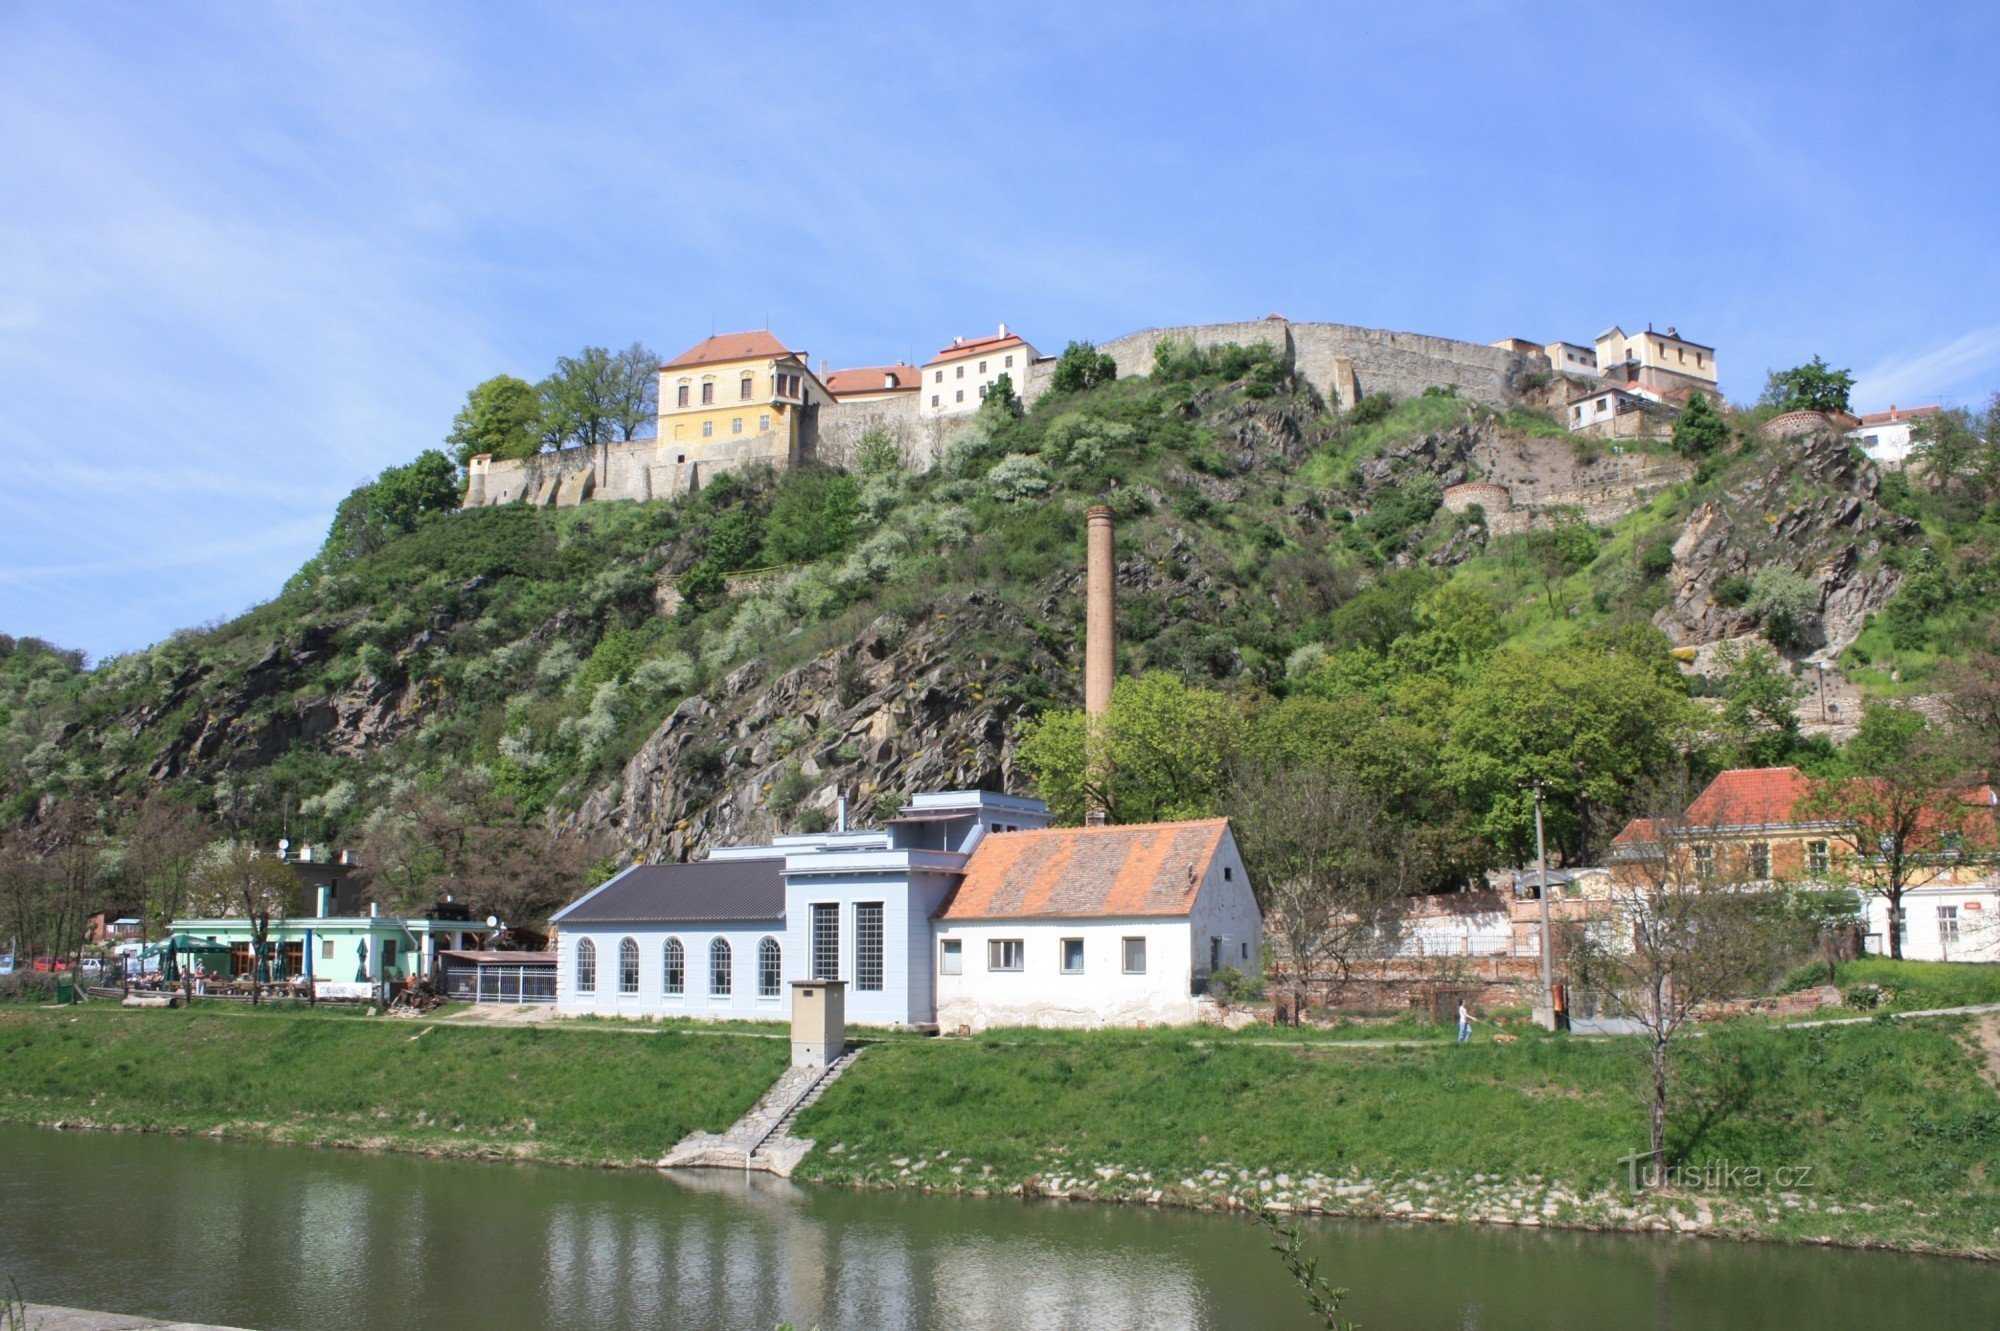 Μέρος της συνοικίας Dyjska με το κάστρο